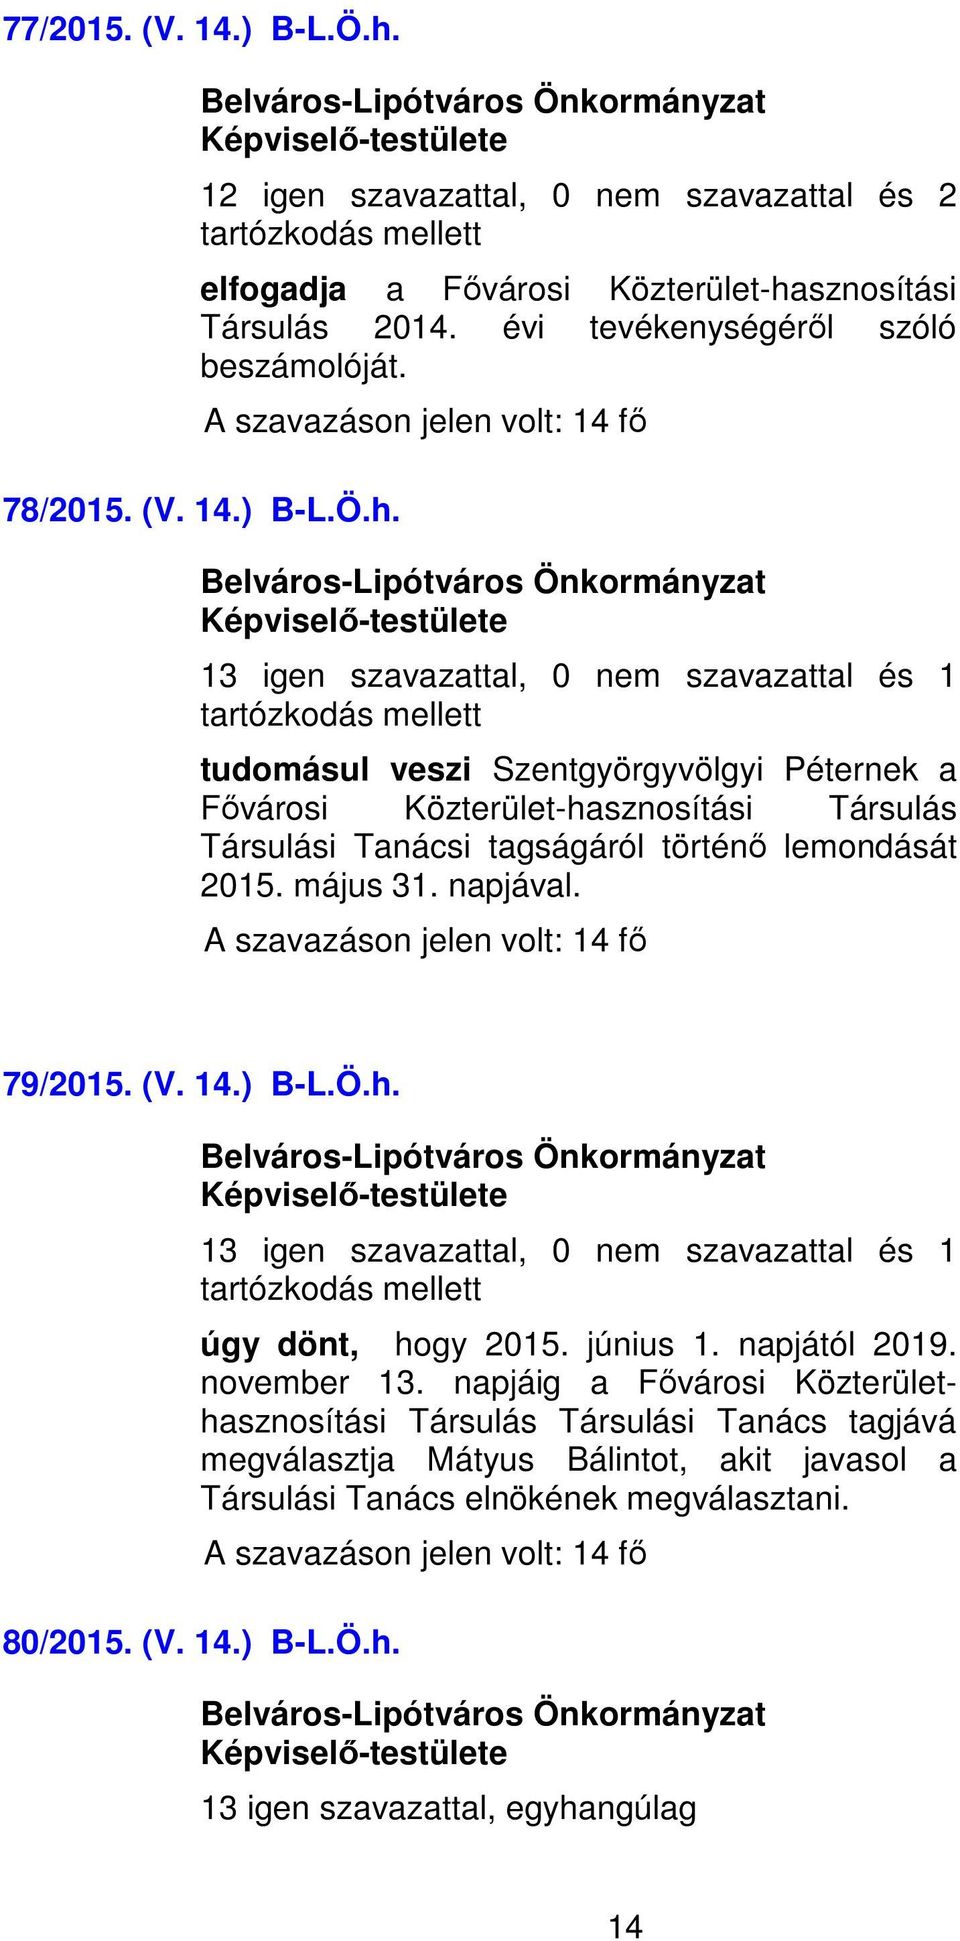 sznosítási Társulás 2014. évi tevékenységéről szóló beszámolóját. 78/2015. (V. 14.) B-L.Ö.h.